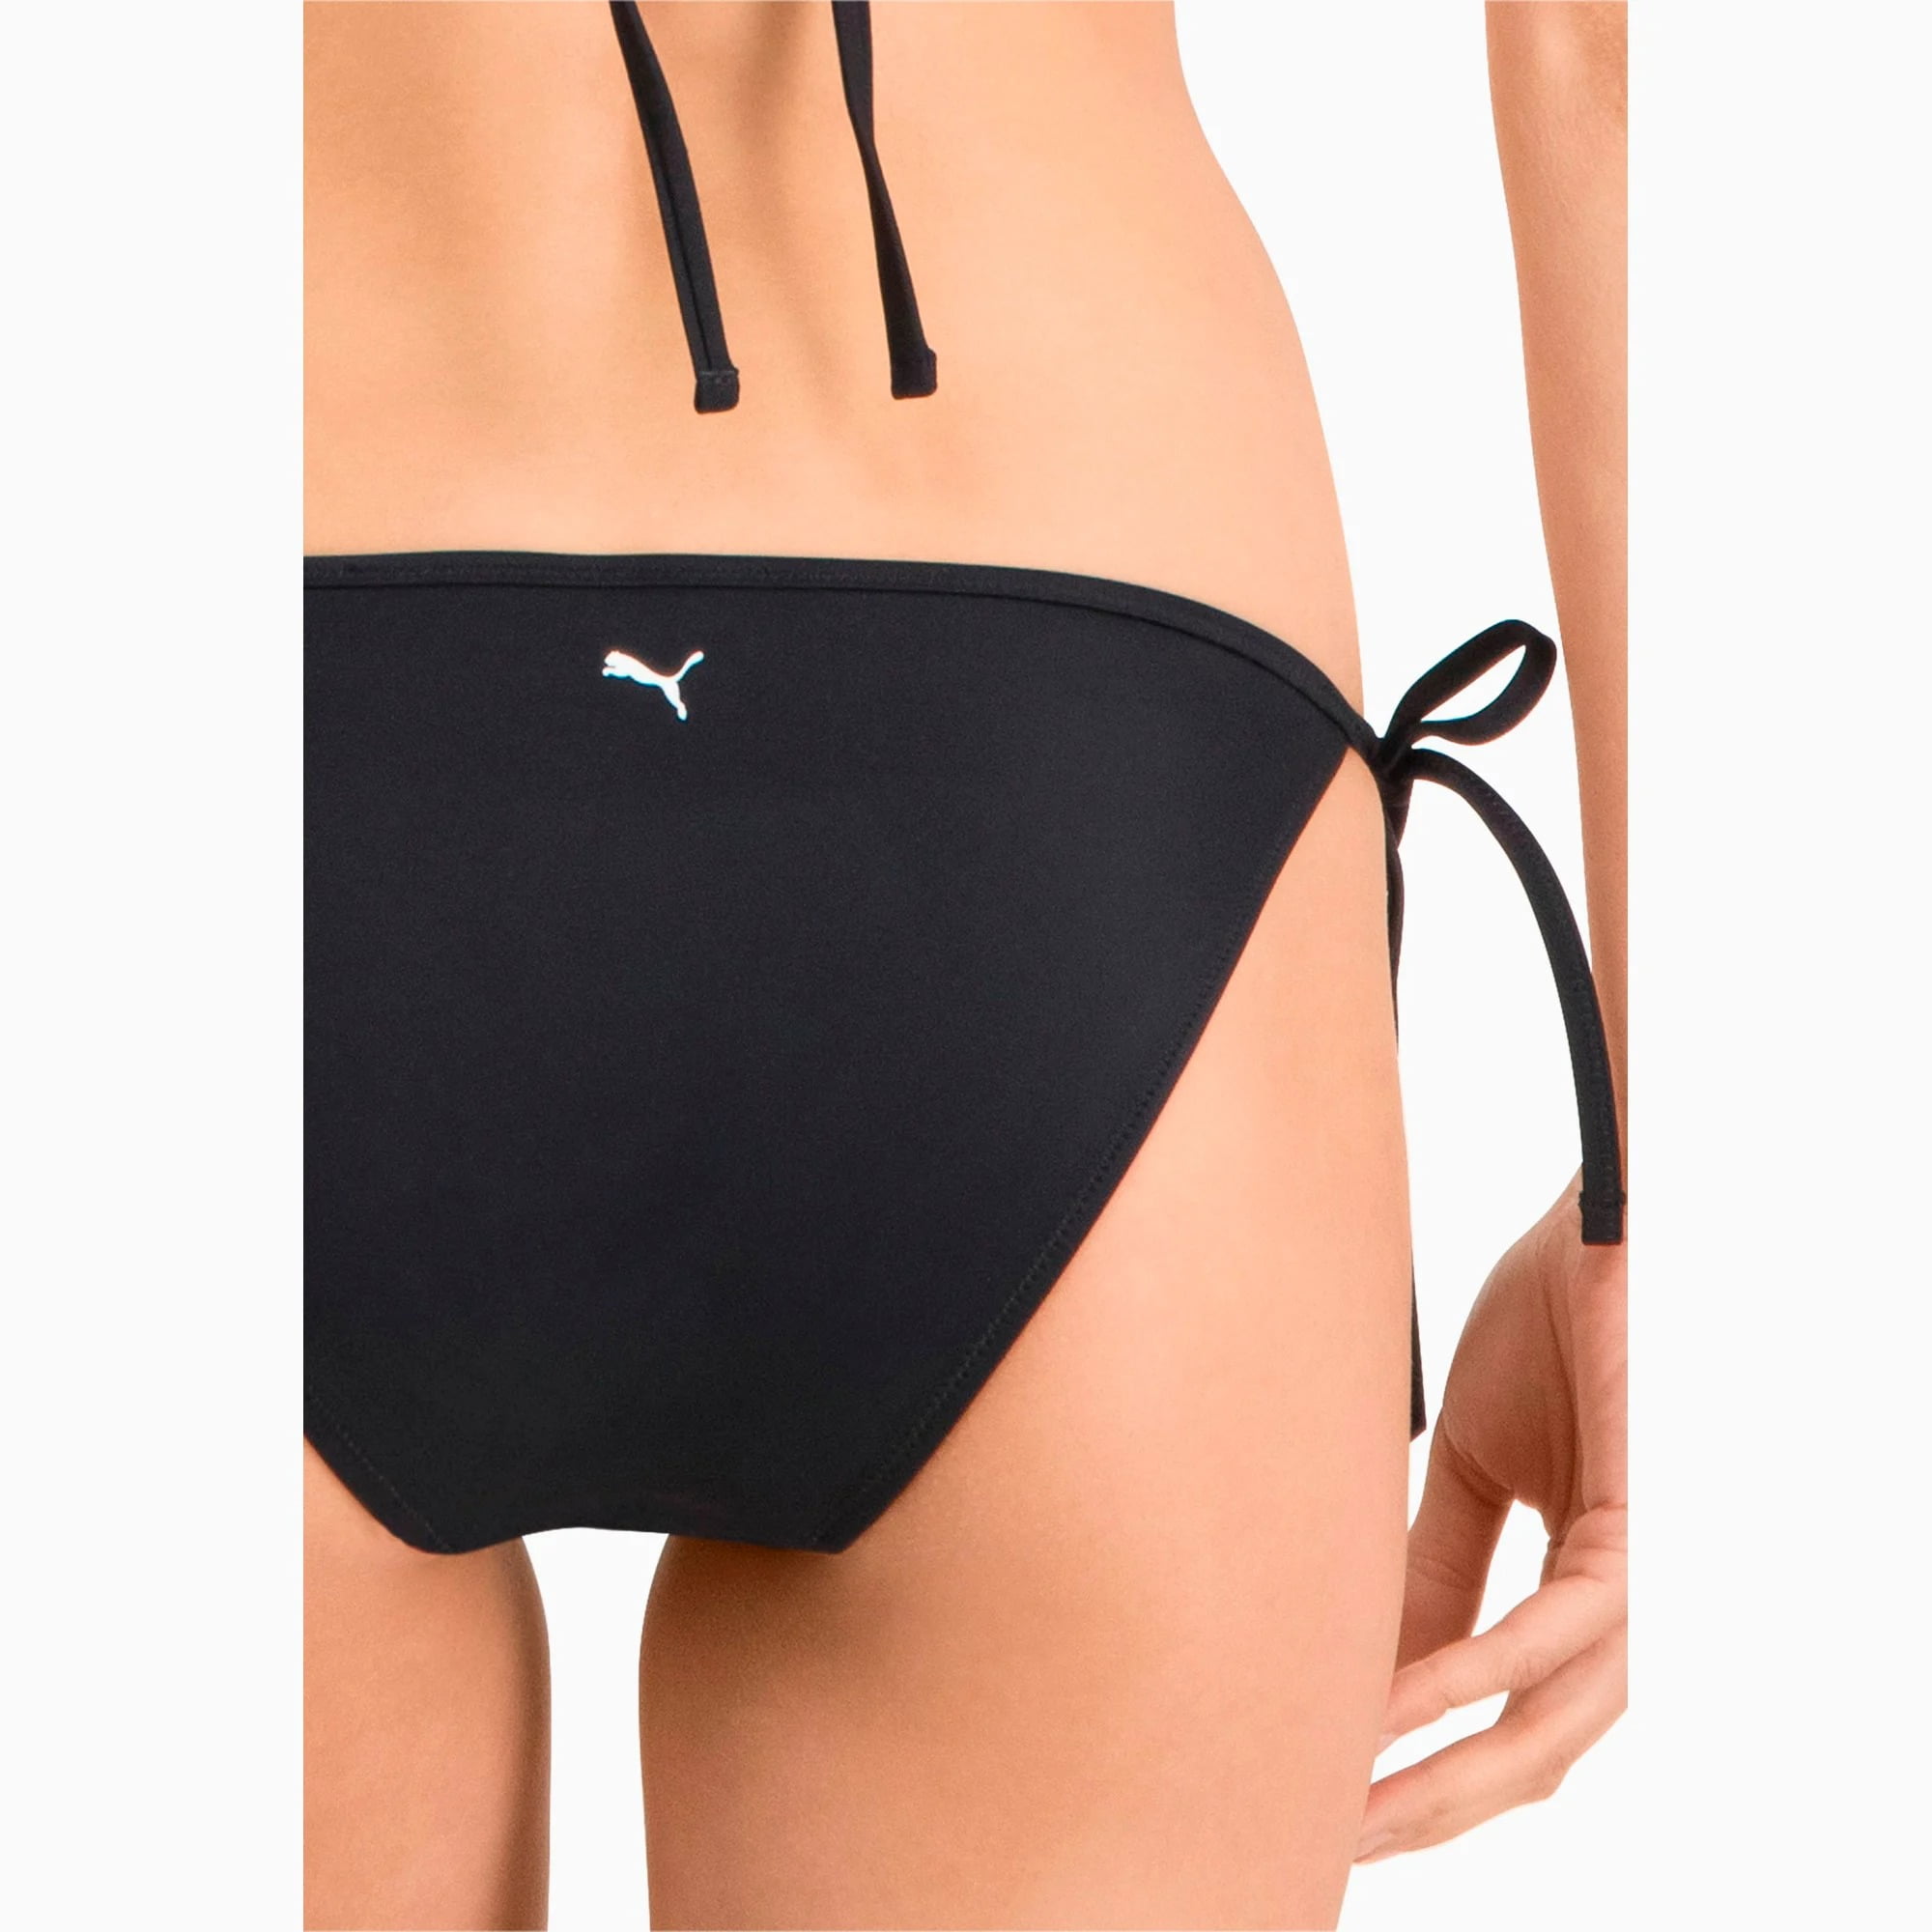 Mikroprocessor Jep At søge tilflugt Puma Womens Side Tie Bikini Bottoms - Walmart.com